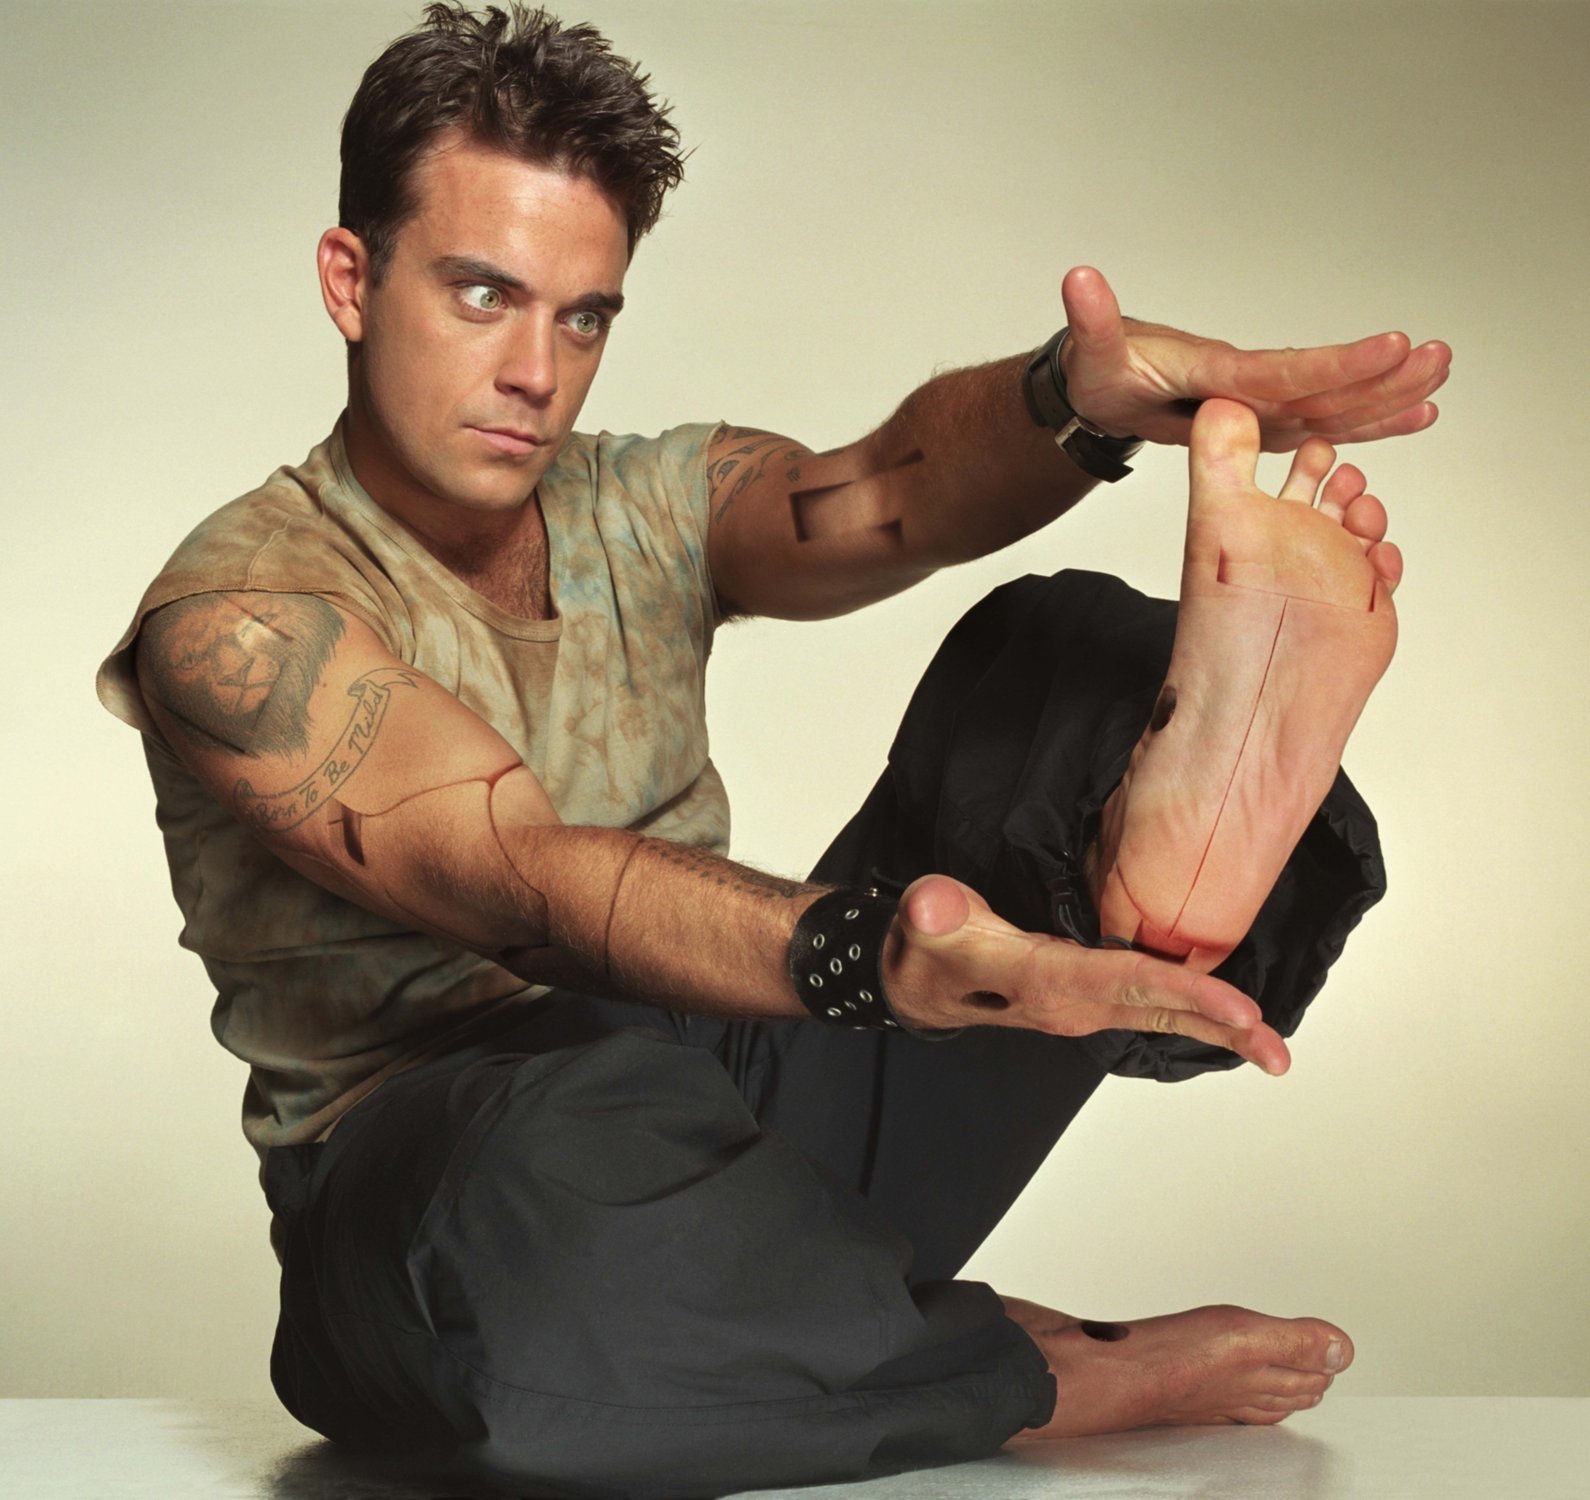 Robbie Williams próbuje wrócić do formy